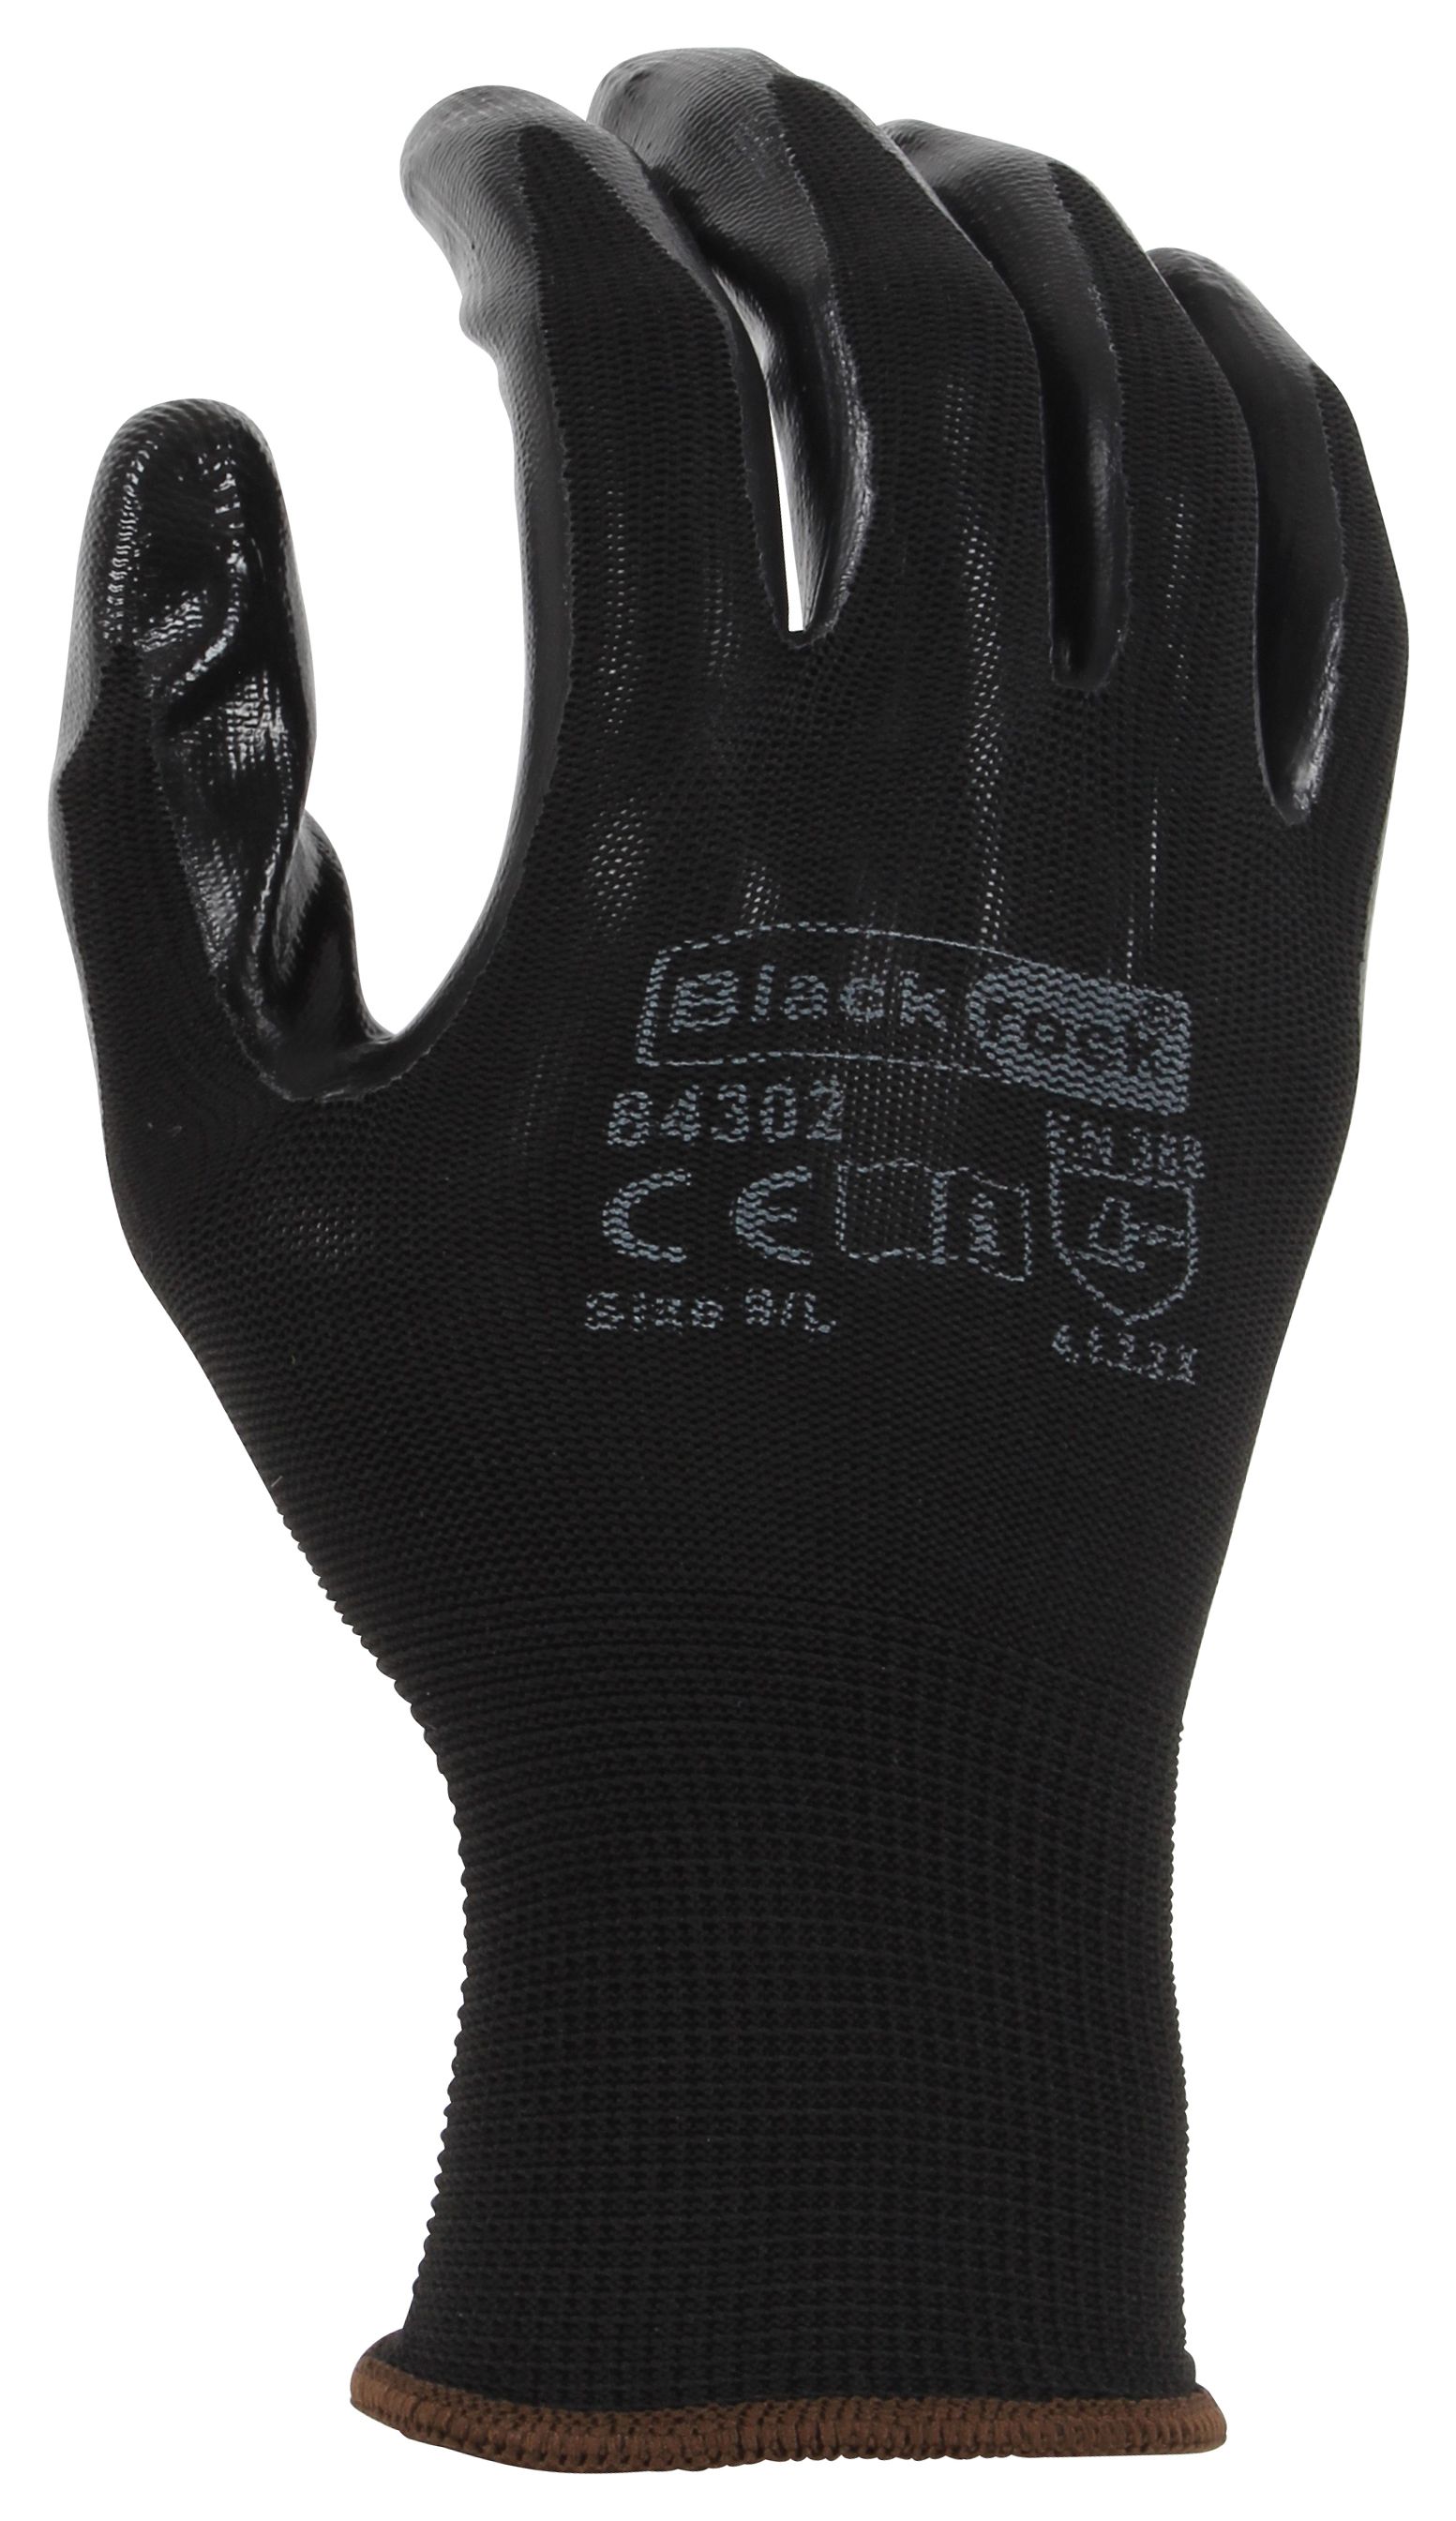 Blackrock Super Grip Black Nitrile Gloves - Size XL/10